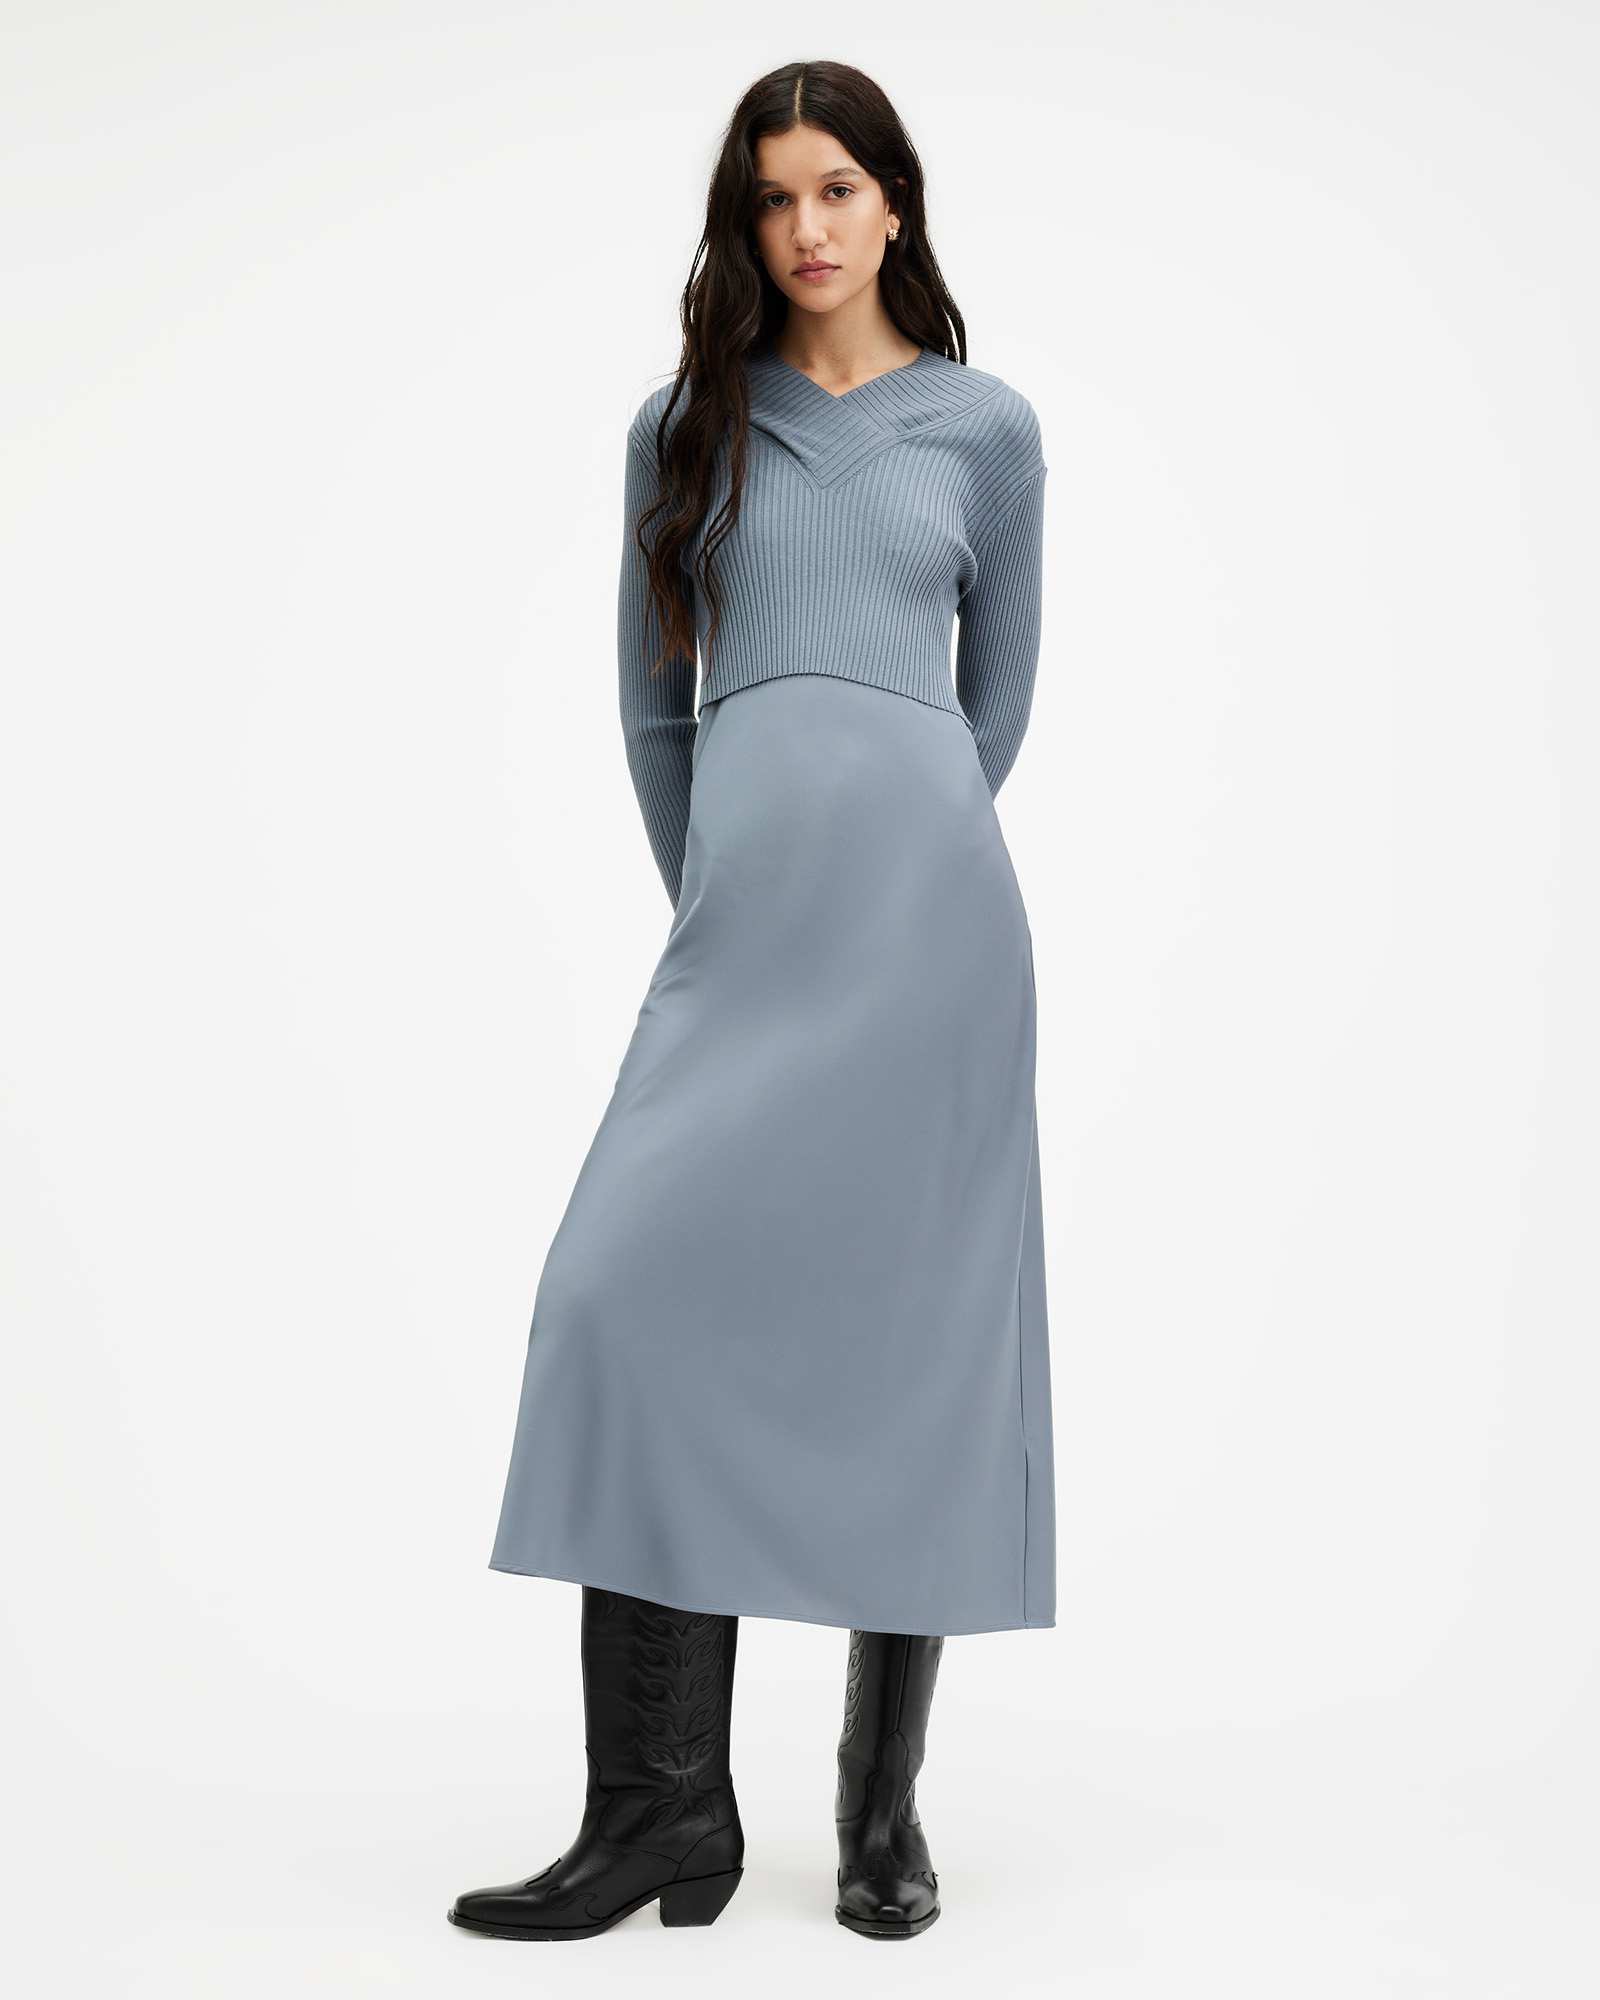 AllSaints Hana 2-In1 Slim Fit Midi Slip Dress,, DARK DENIM BLUE, Size: